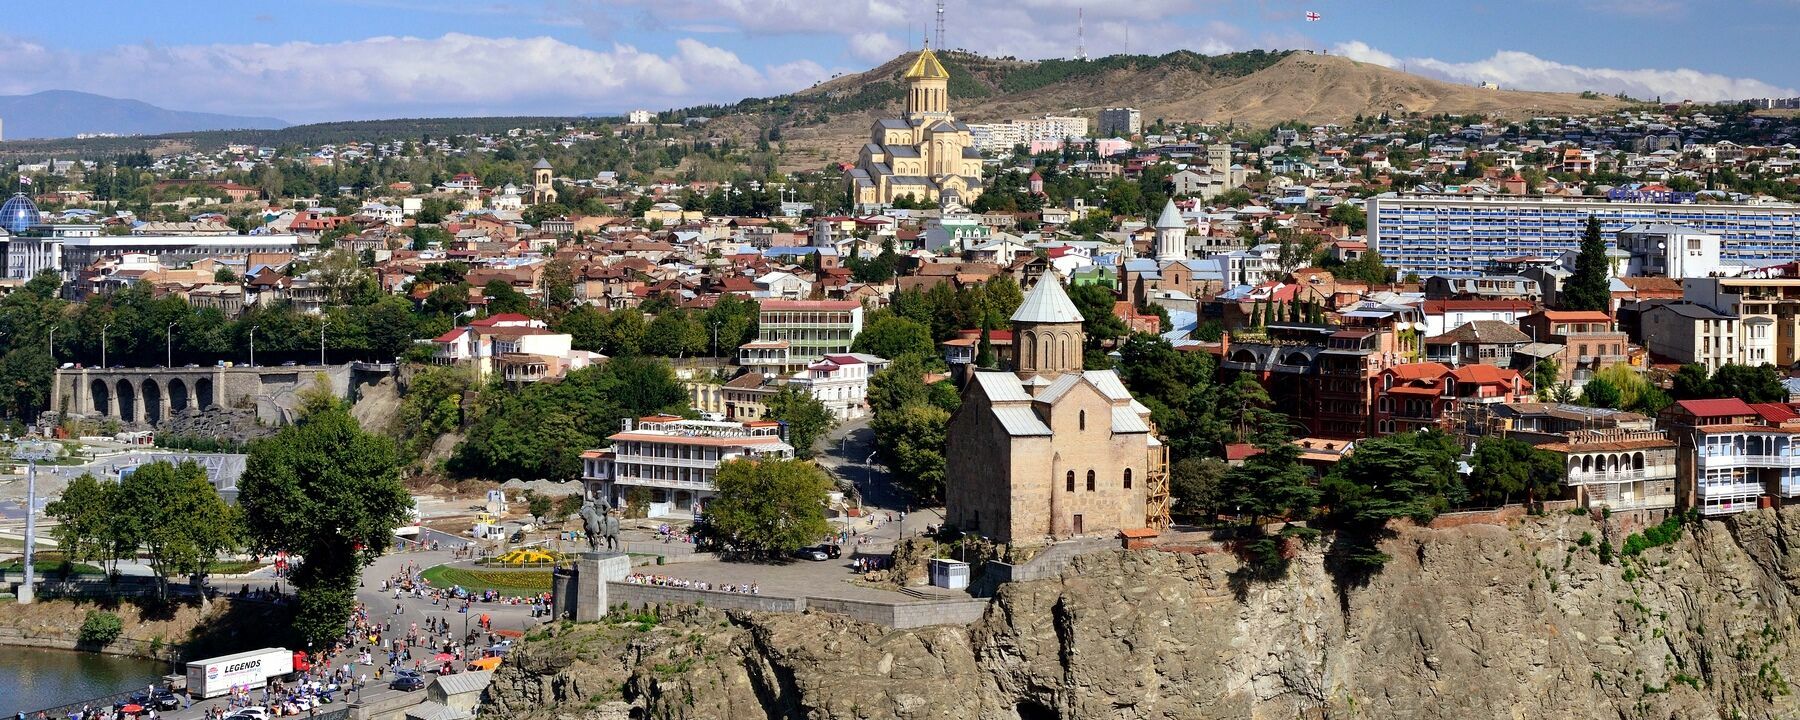 МИД РФ: нужно «тщательно взвешивать риски, связанные с поездками в Грузию»